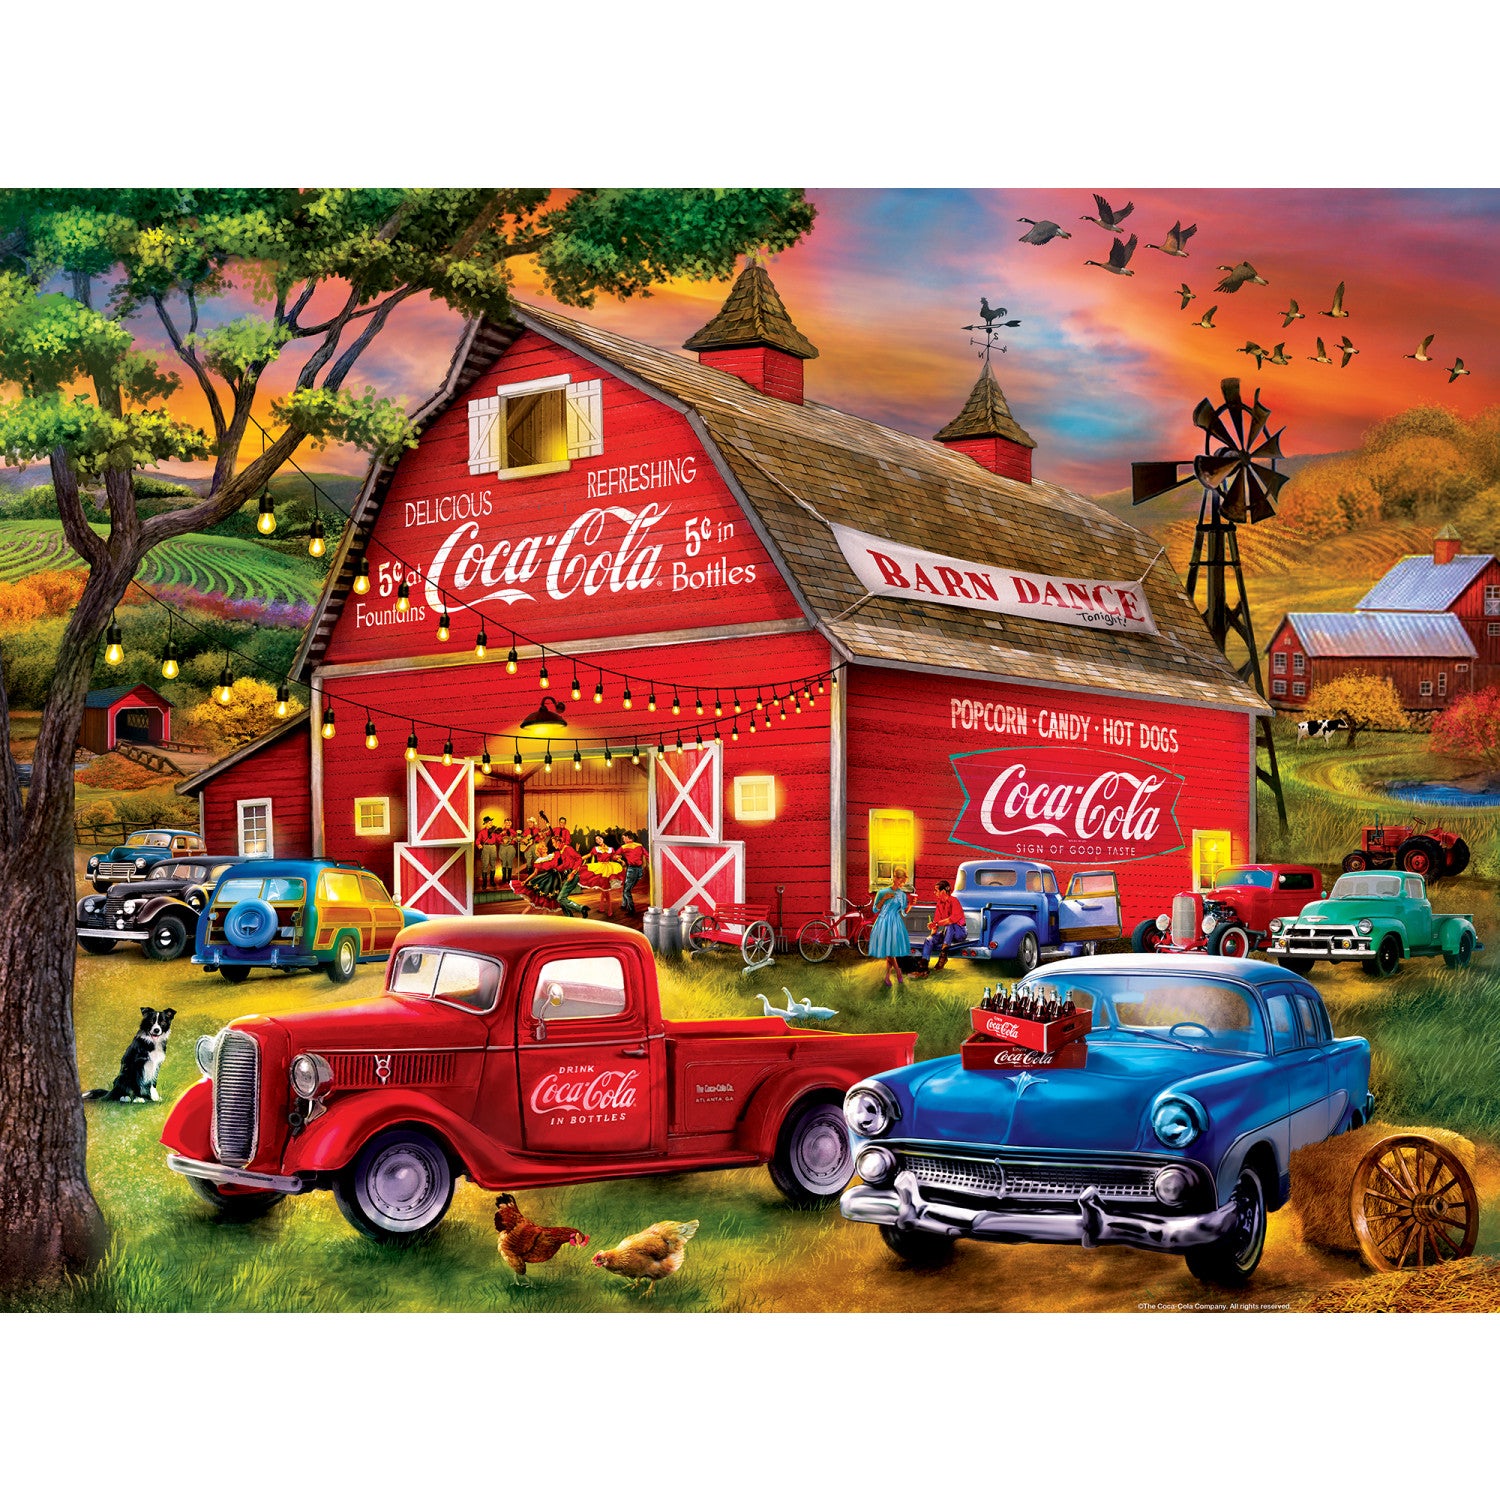 Coca-Cola - Barn Dance 300 Piece EZ Grip Puzzle